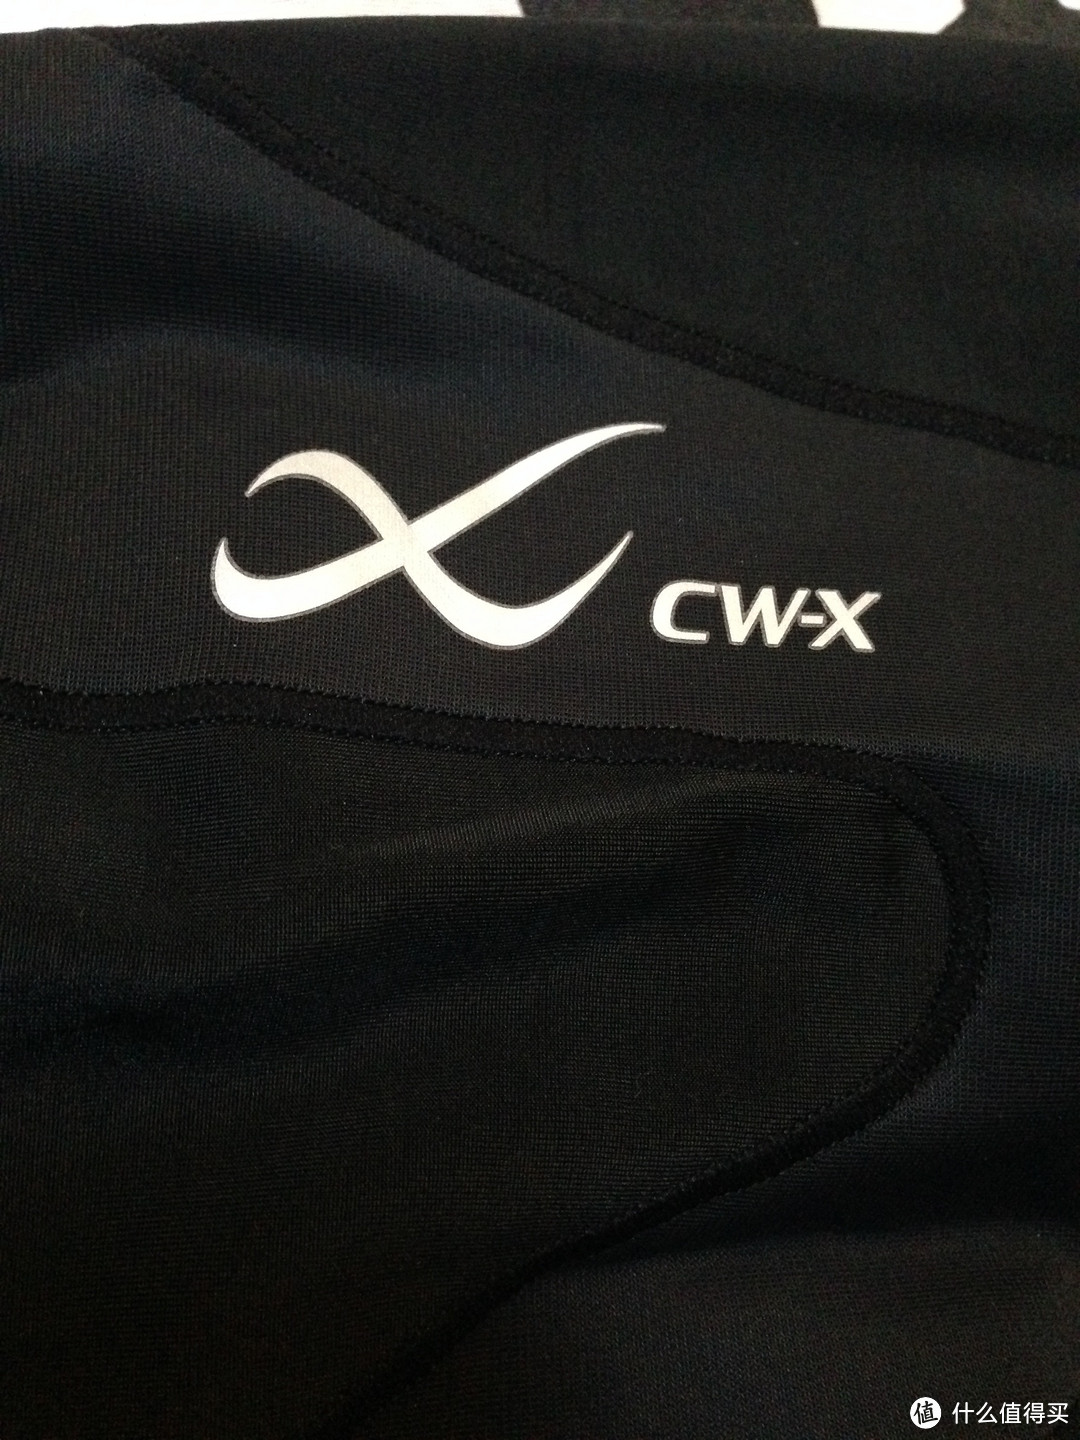 奖励与激励：CW-X tight 压缩卡& under armour 压缩衣& kayano20 跑鞋